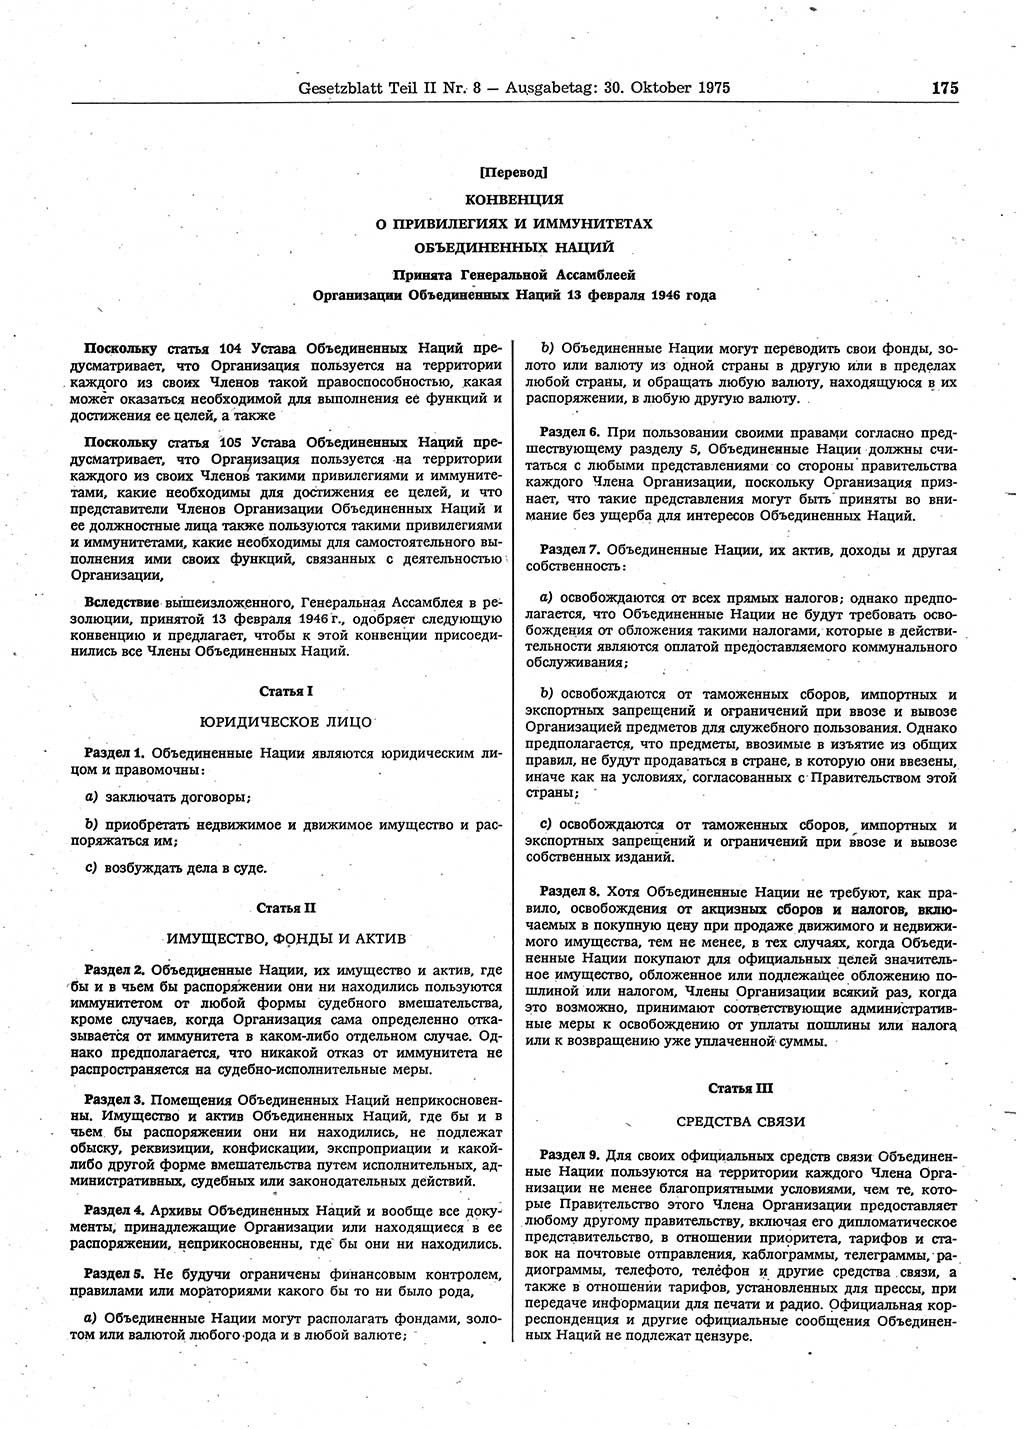 Gesetzblatt (GBl.) der Deutschen Demokratischen Republik (DDR) Teil ⅠⅠ 1975, Seite 175 (GBl. DDR ⅠⅠ 1975, S. 175)